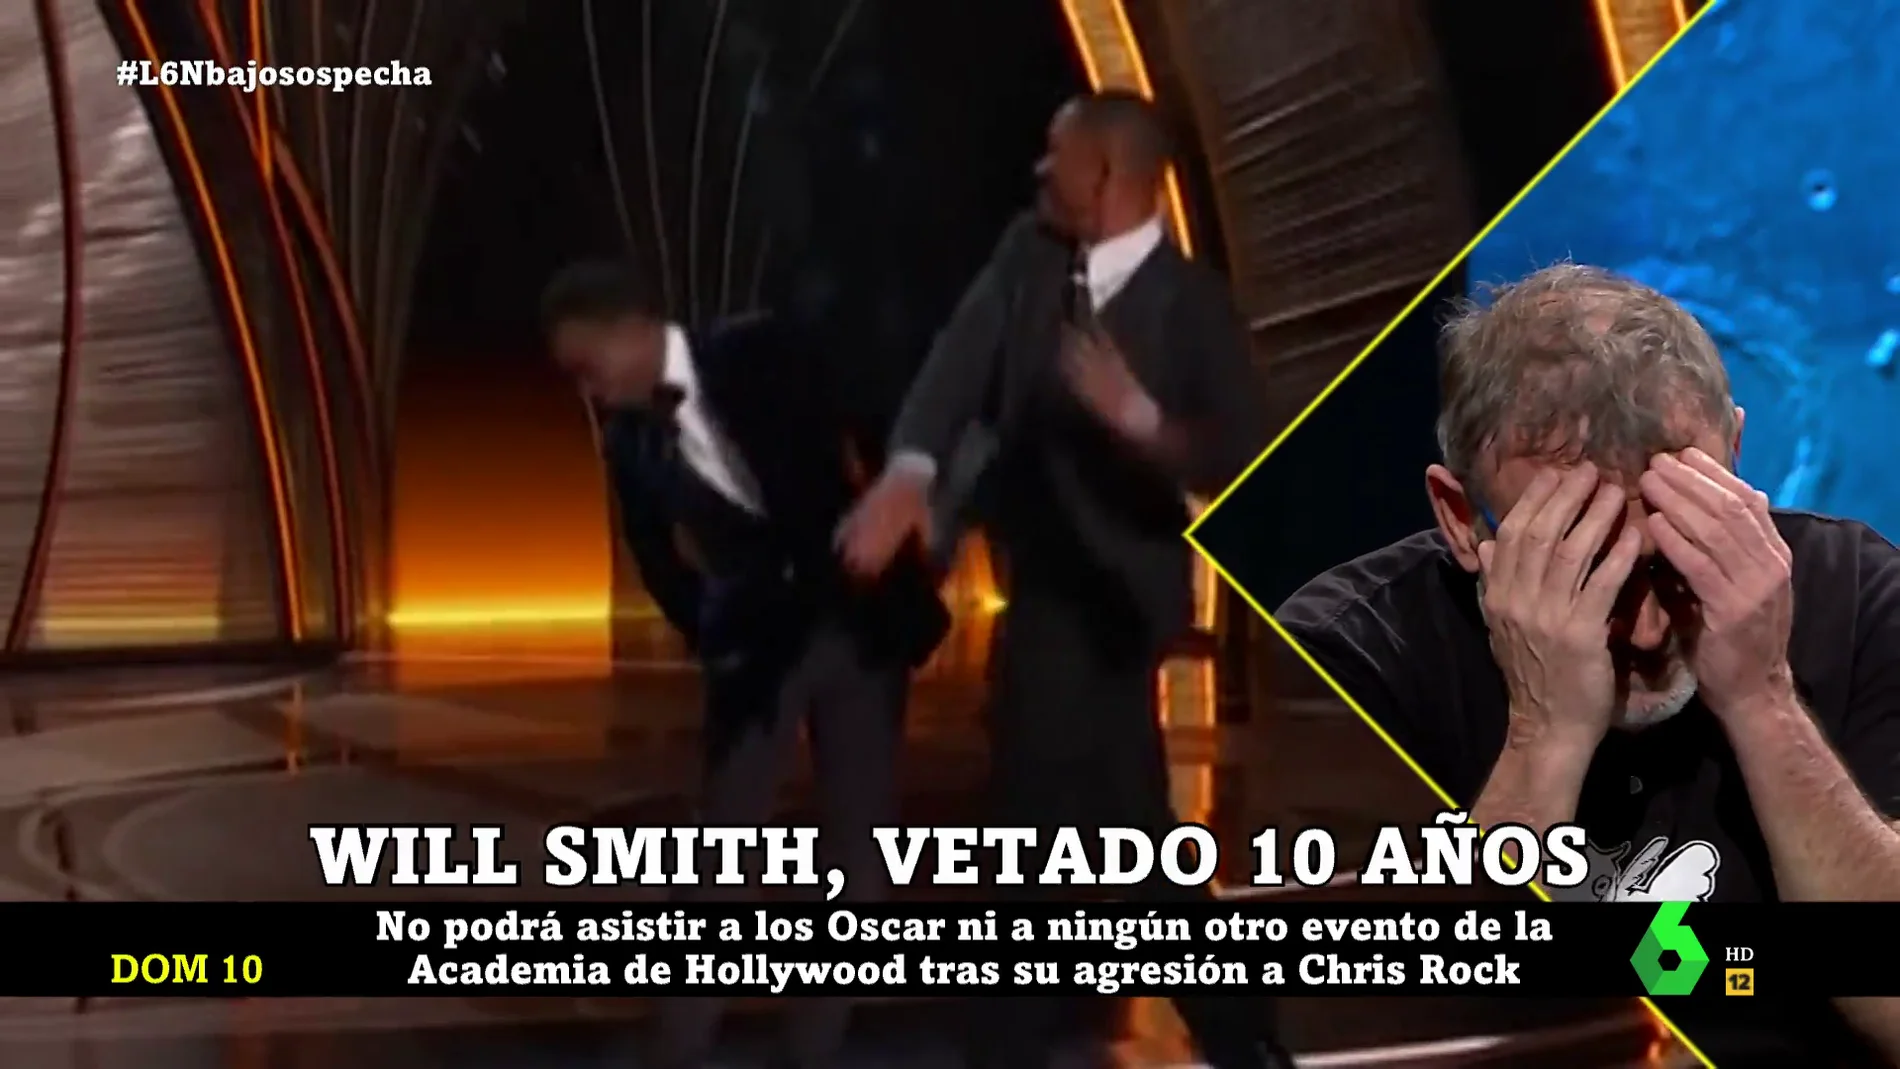 La opinión de Pablo Carbonell sobre el bofetón de Will Smith a Chris Rock en los Oscar